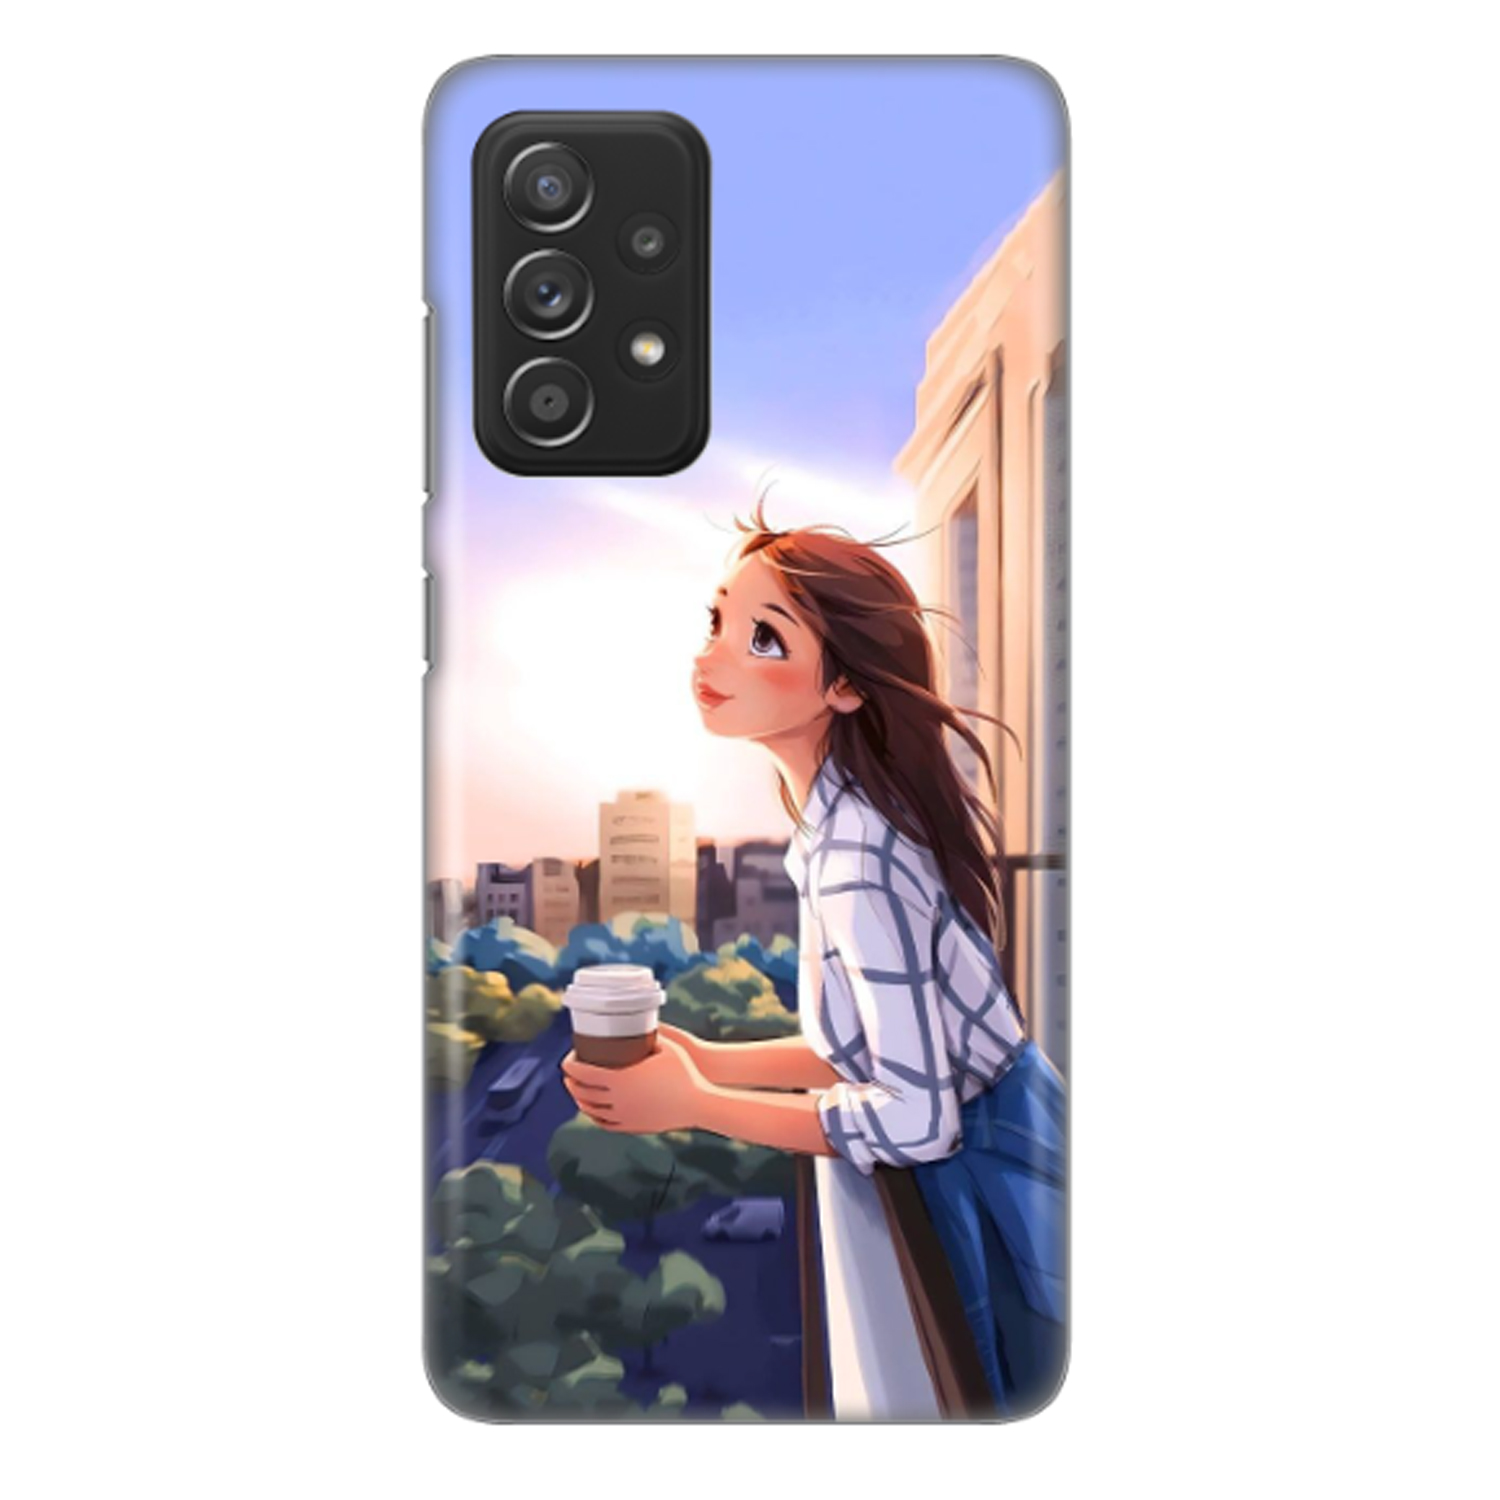 کاور طرح دختر و قهوه کد DIMO-016 مناسب برای گوشی موبایل سامسونگ Galaxy A52s / Galaxy A52 